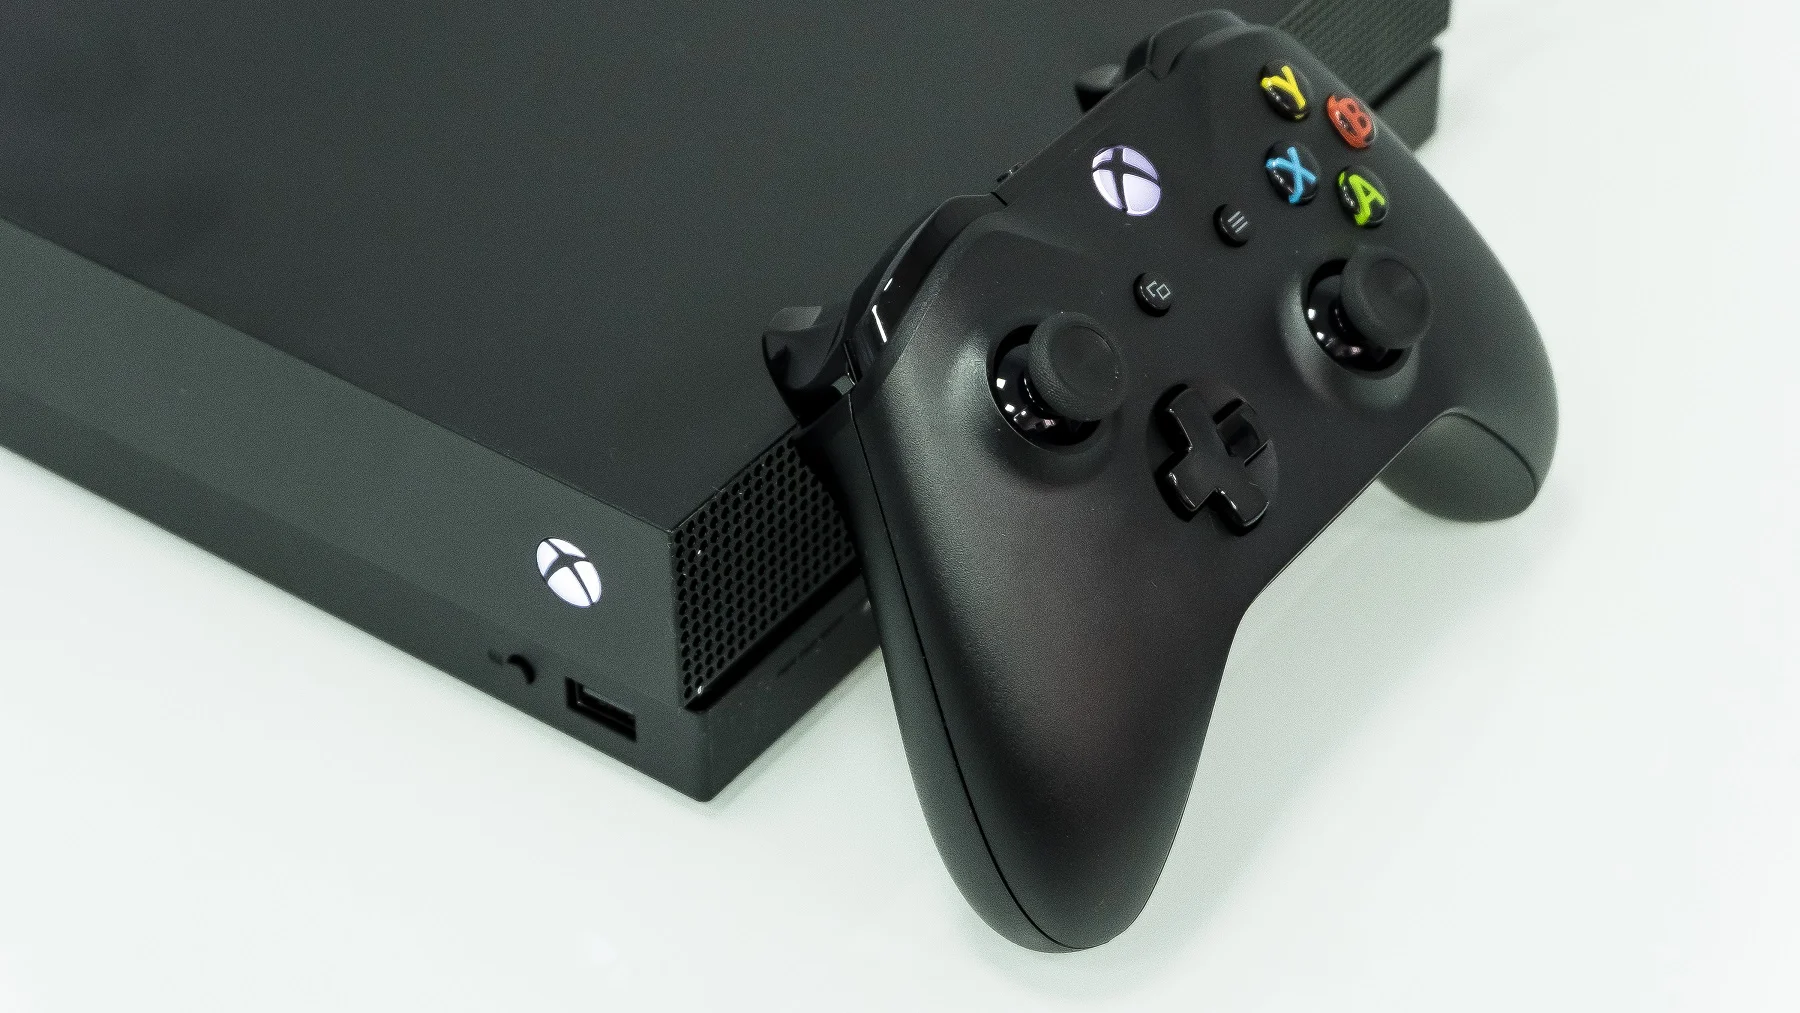 «Самая мощная игровая консоль» Xbox One X, ранее известная как Scorpio, наконец вышла во всем мире, и мы смогли погрузиться в мир «честного 4К» на игровой консоли поколения 8,5. Так ли она хороша? Давайте разбираться.